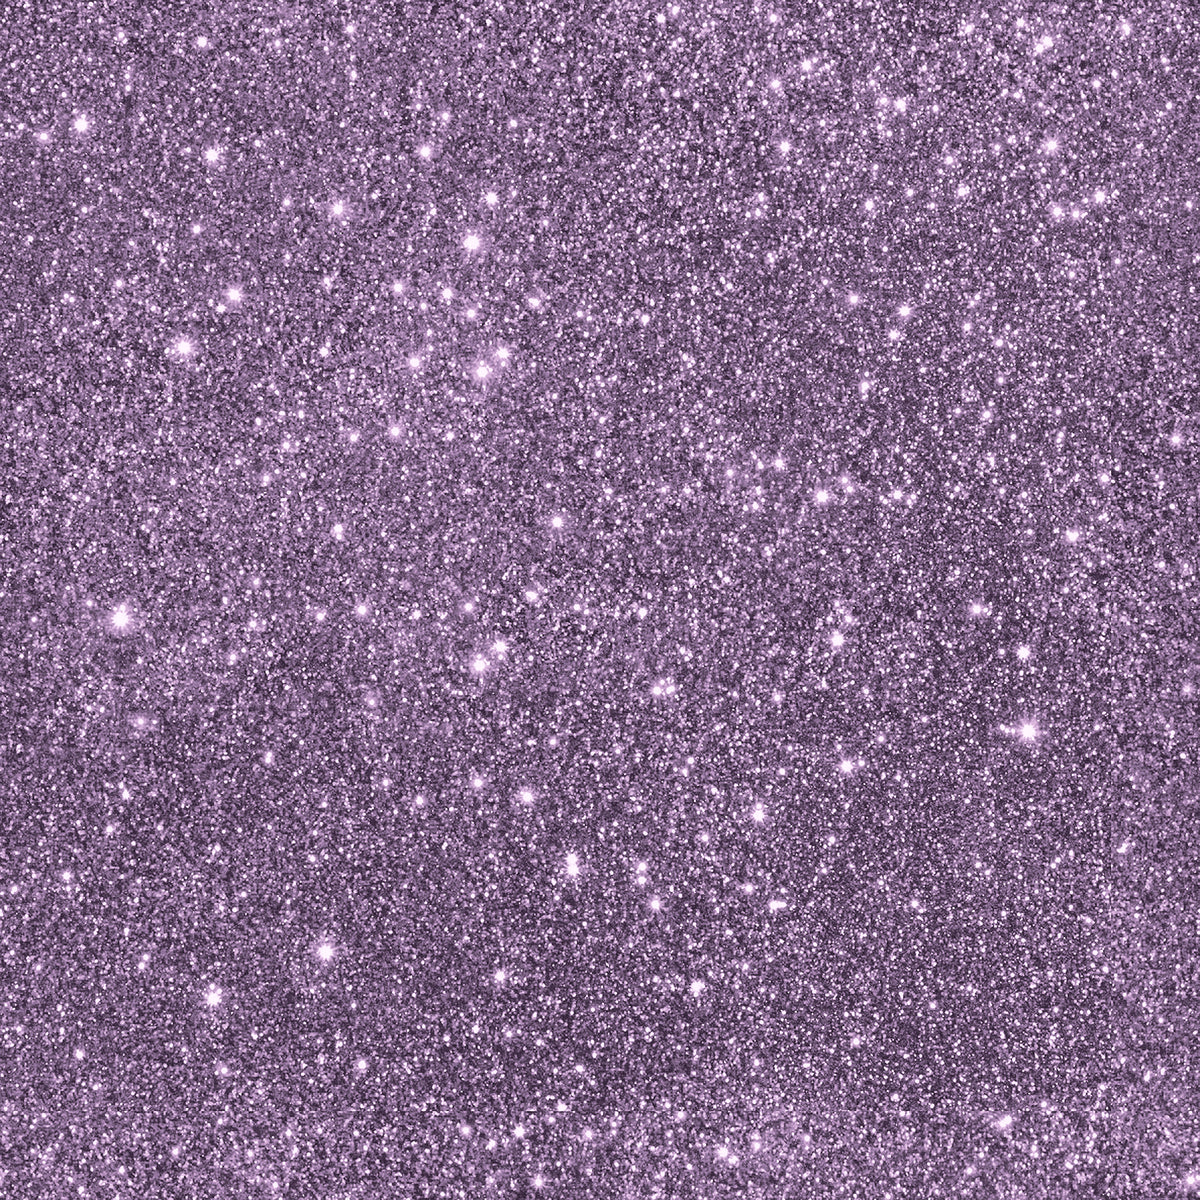 Purple Glitter 6x6 Paper Pad